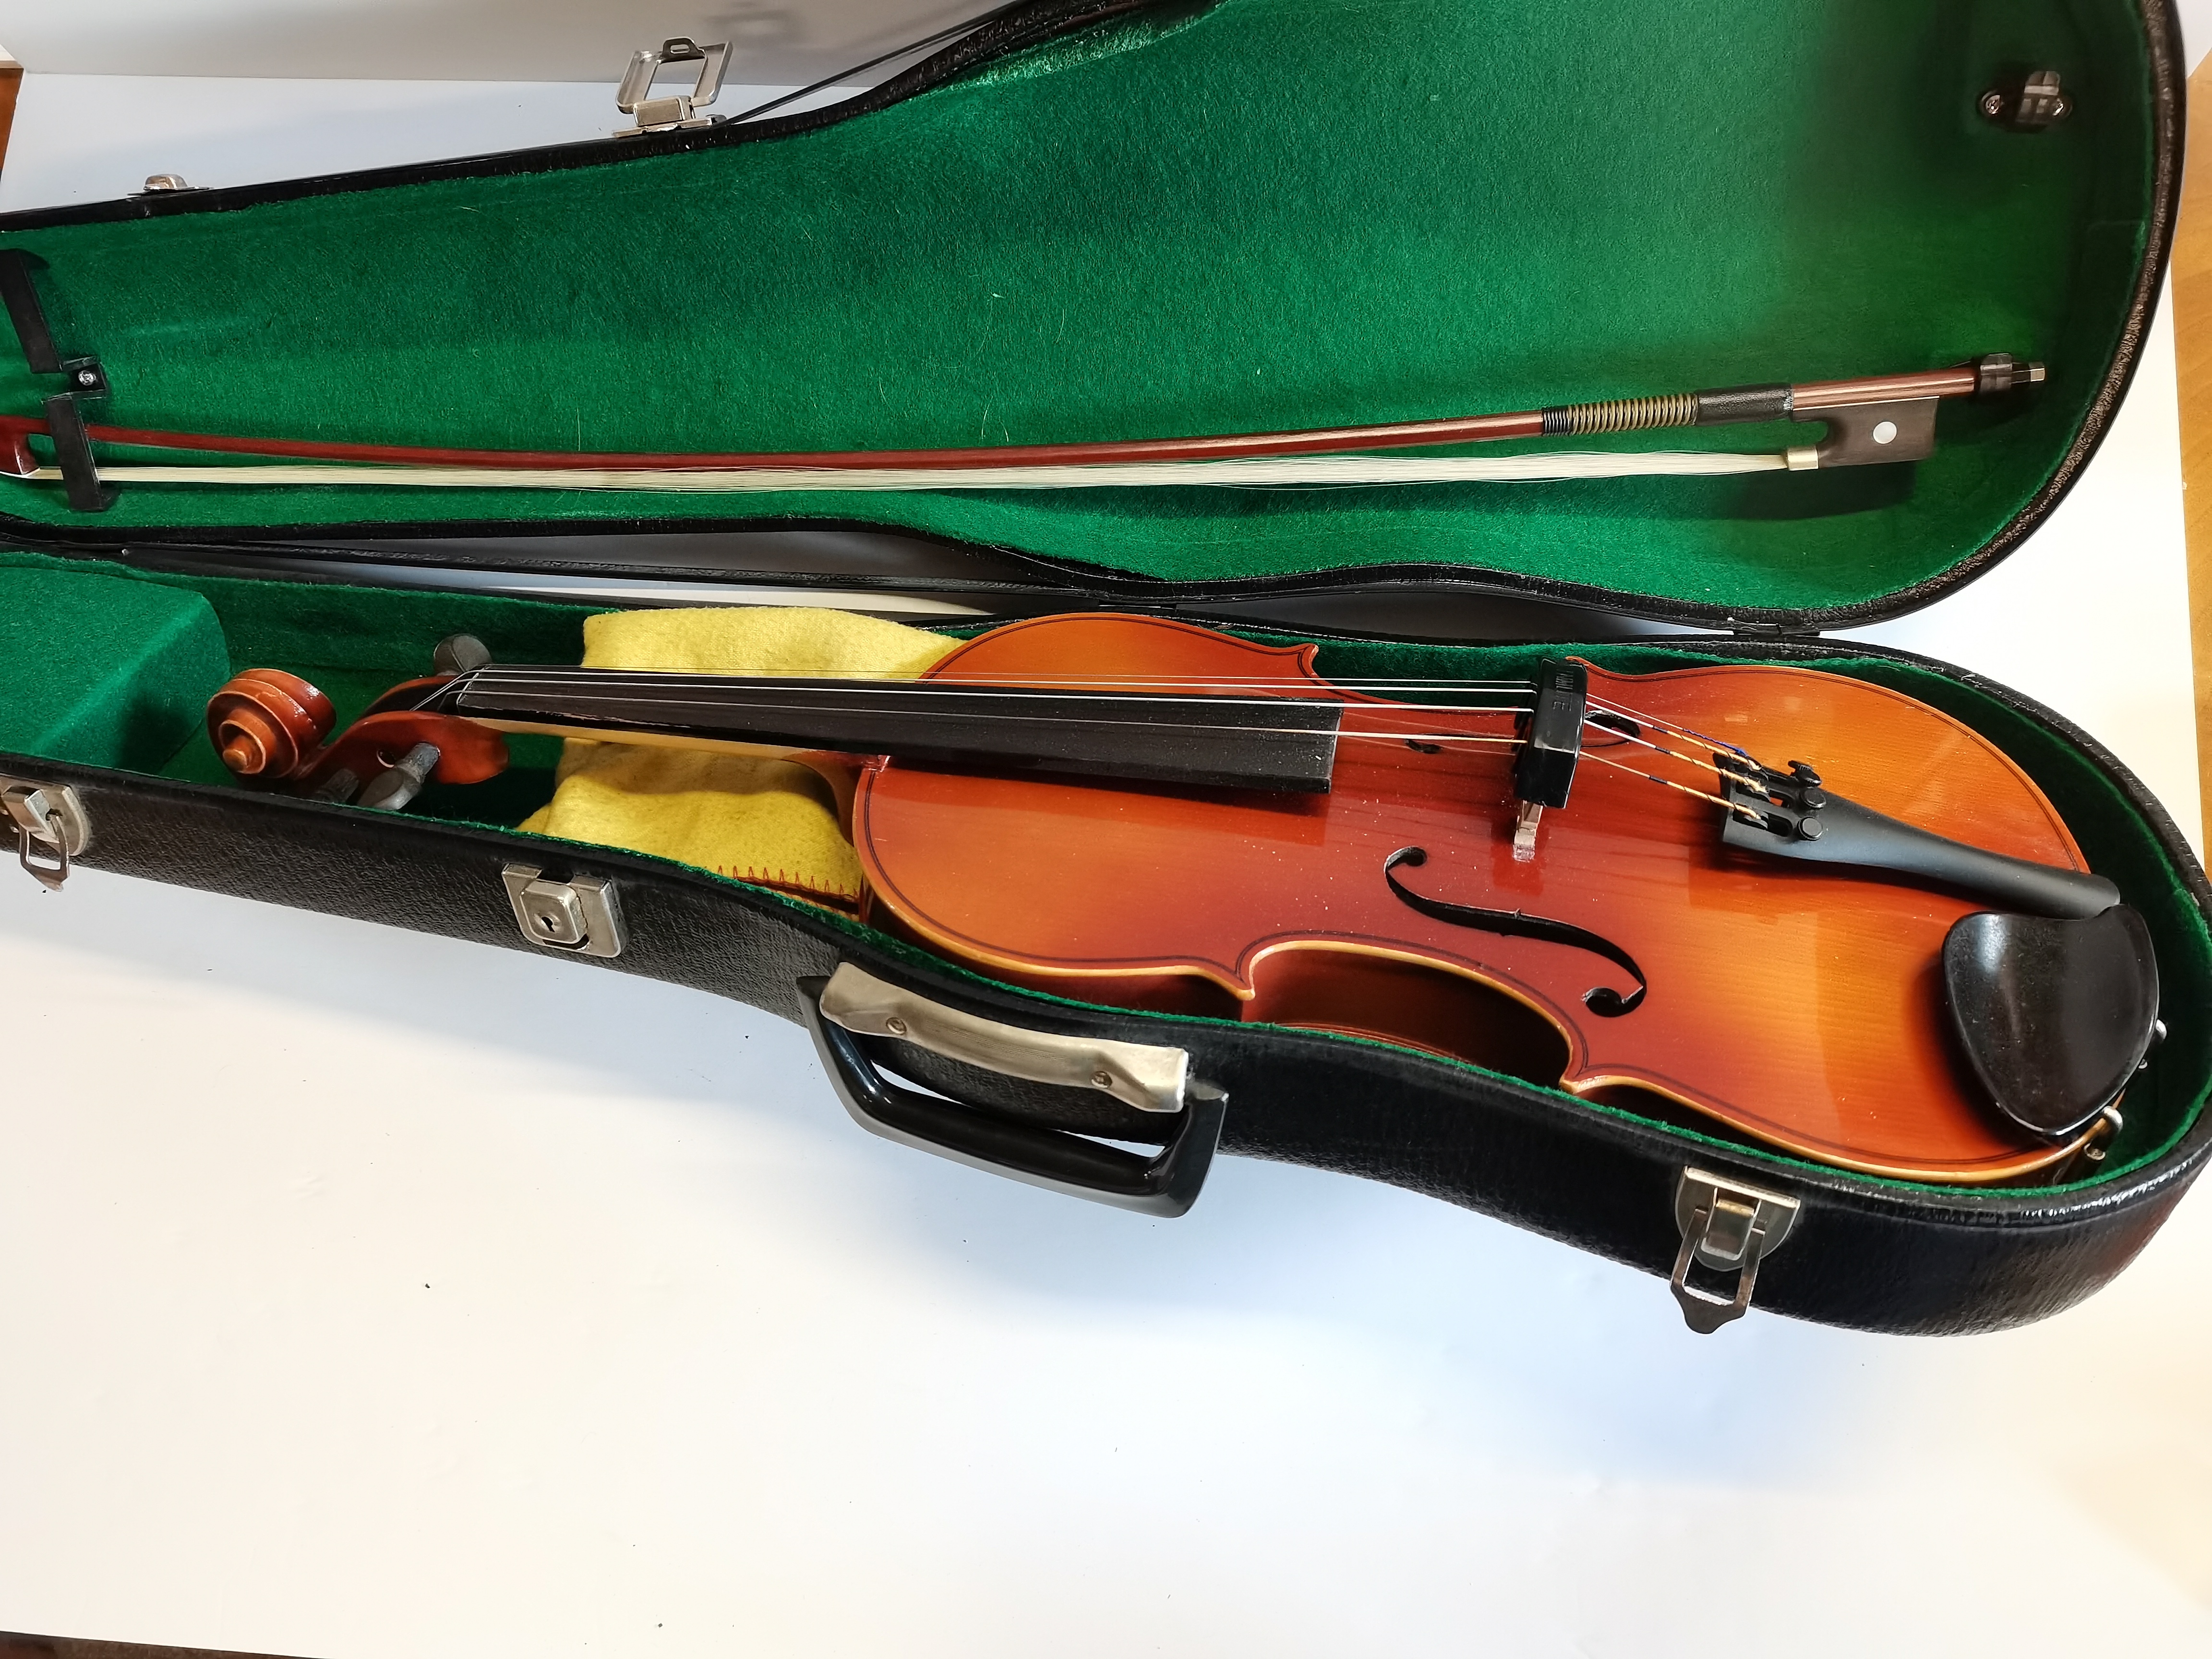 Kiso Susuki violin Co Violin Exc. Condition With Case - Image 2 of 3